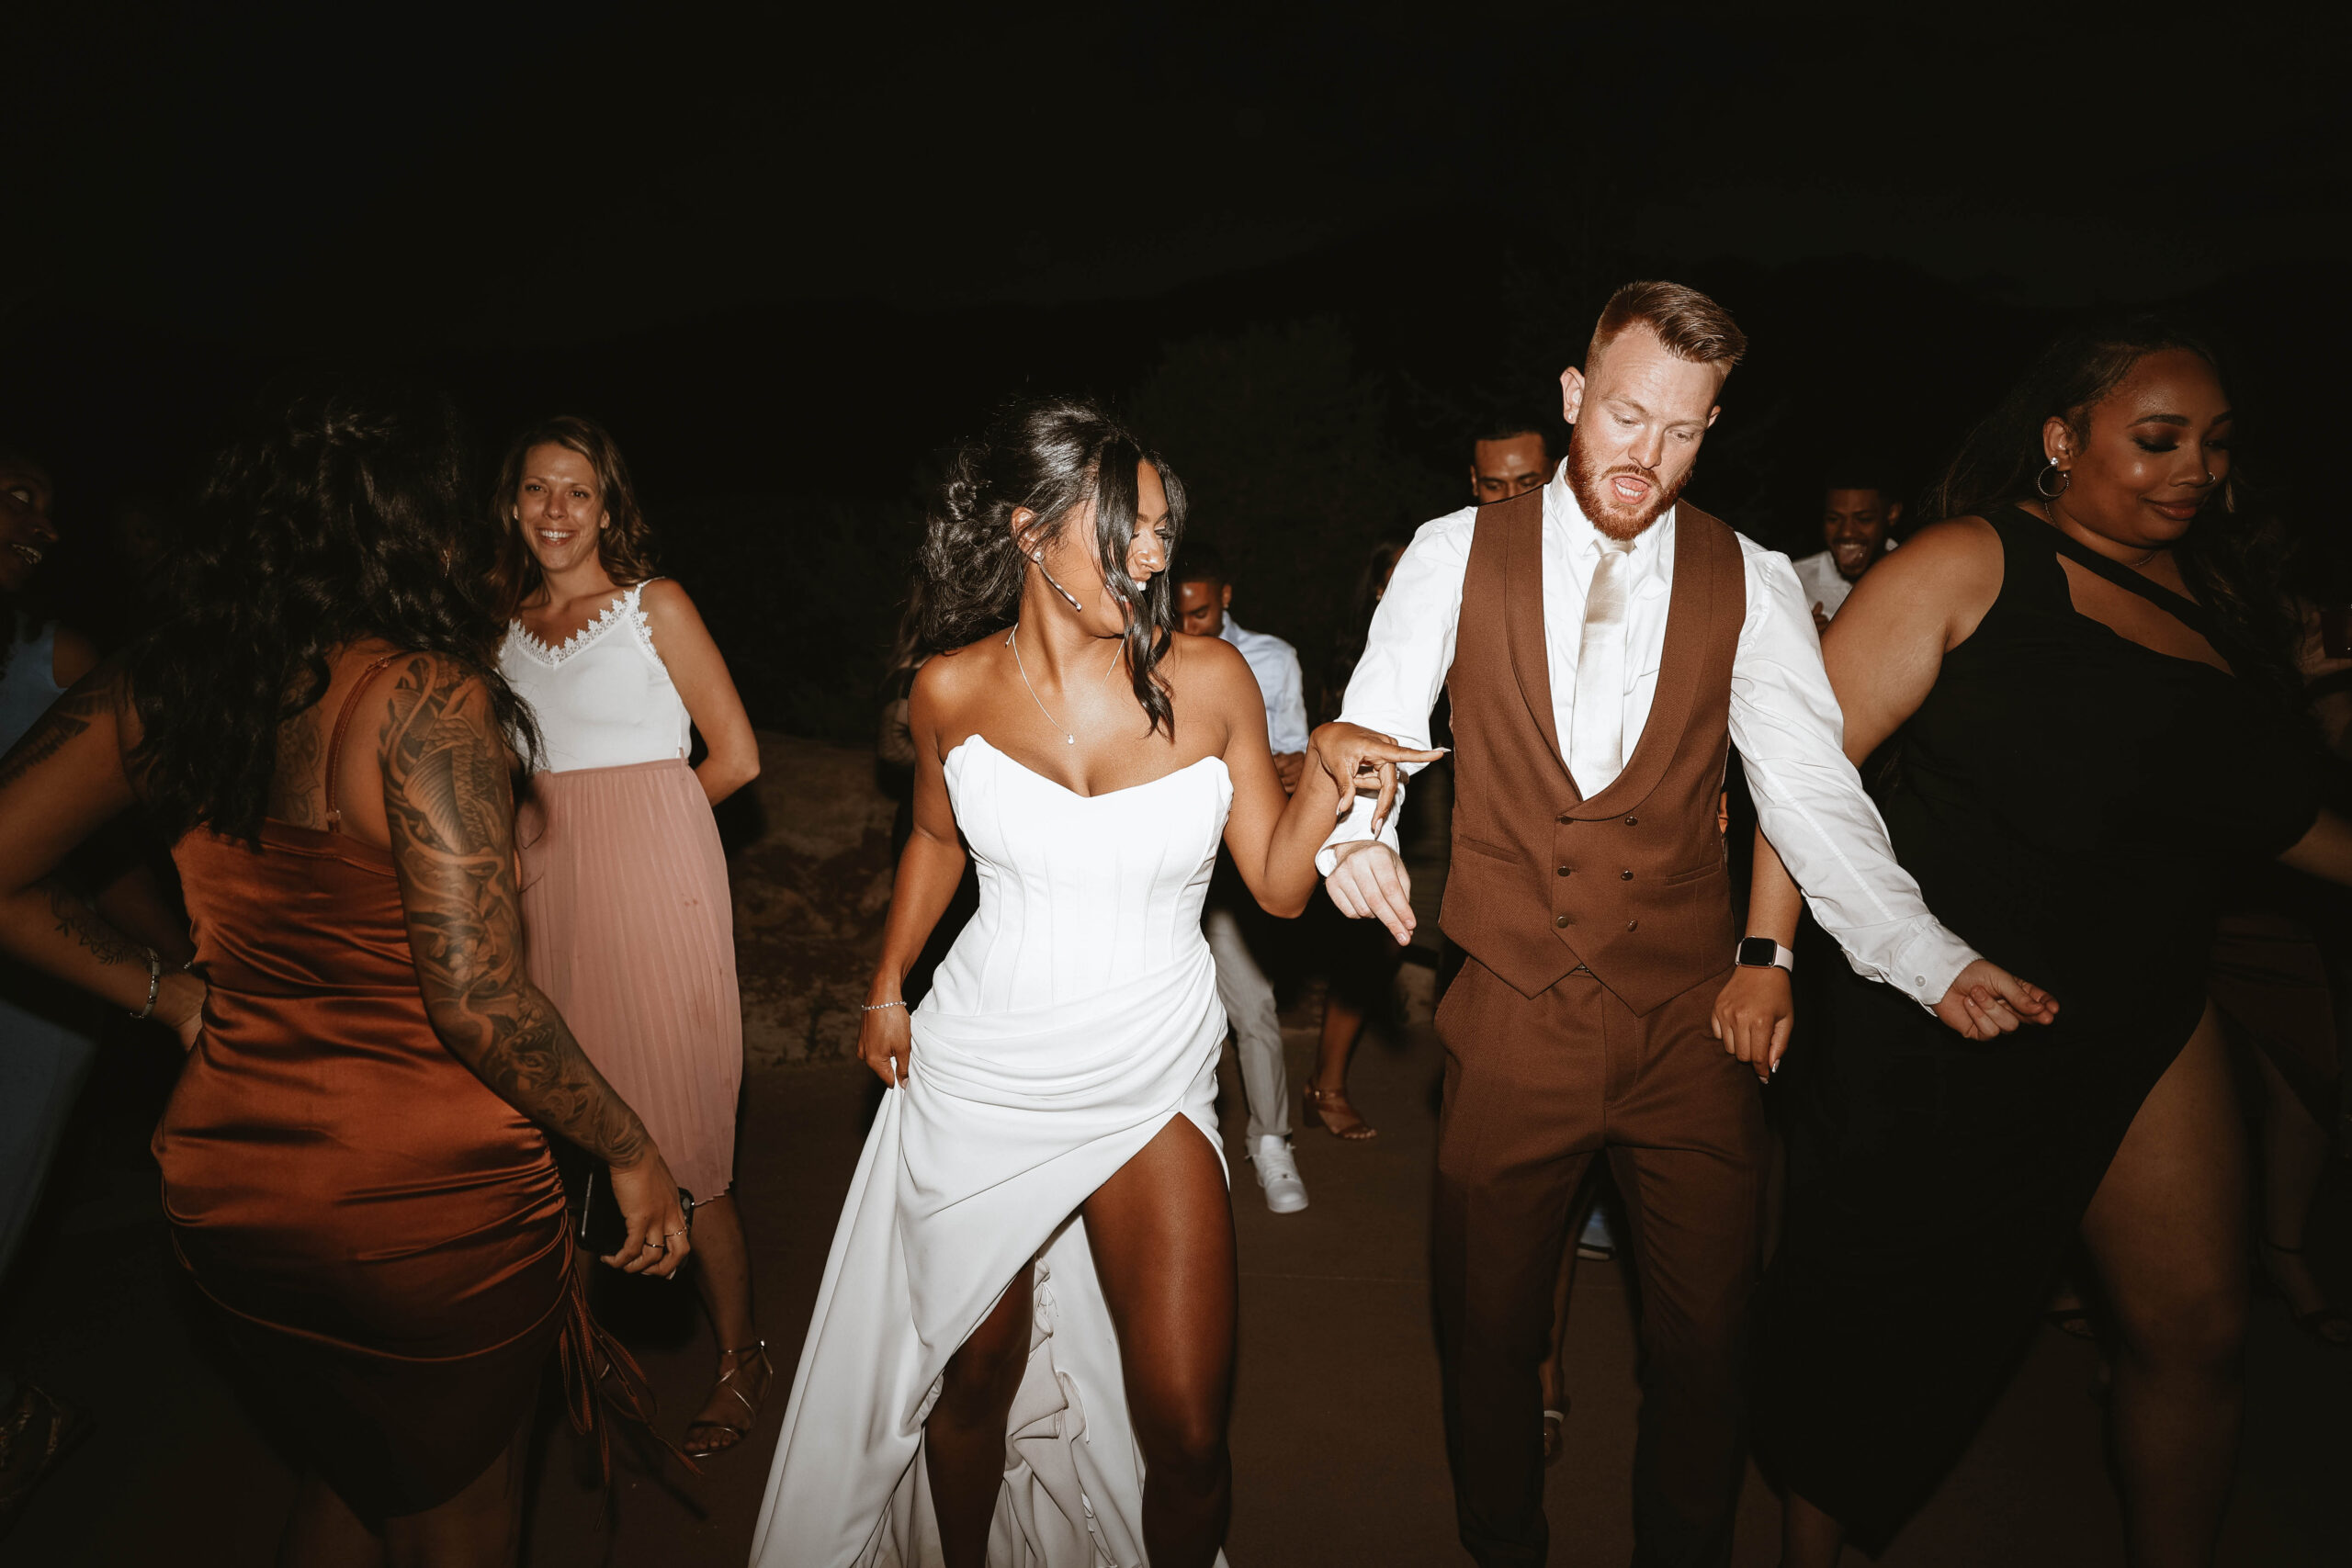 bride and groom dancing at reception at outdoor wedding in Colorado